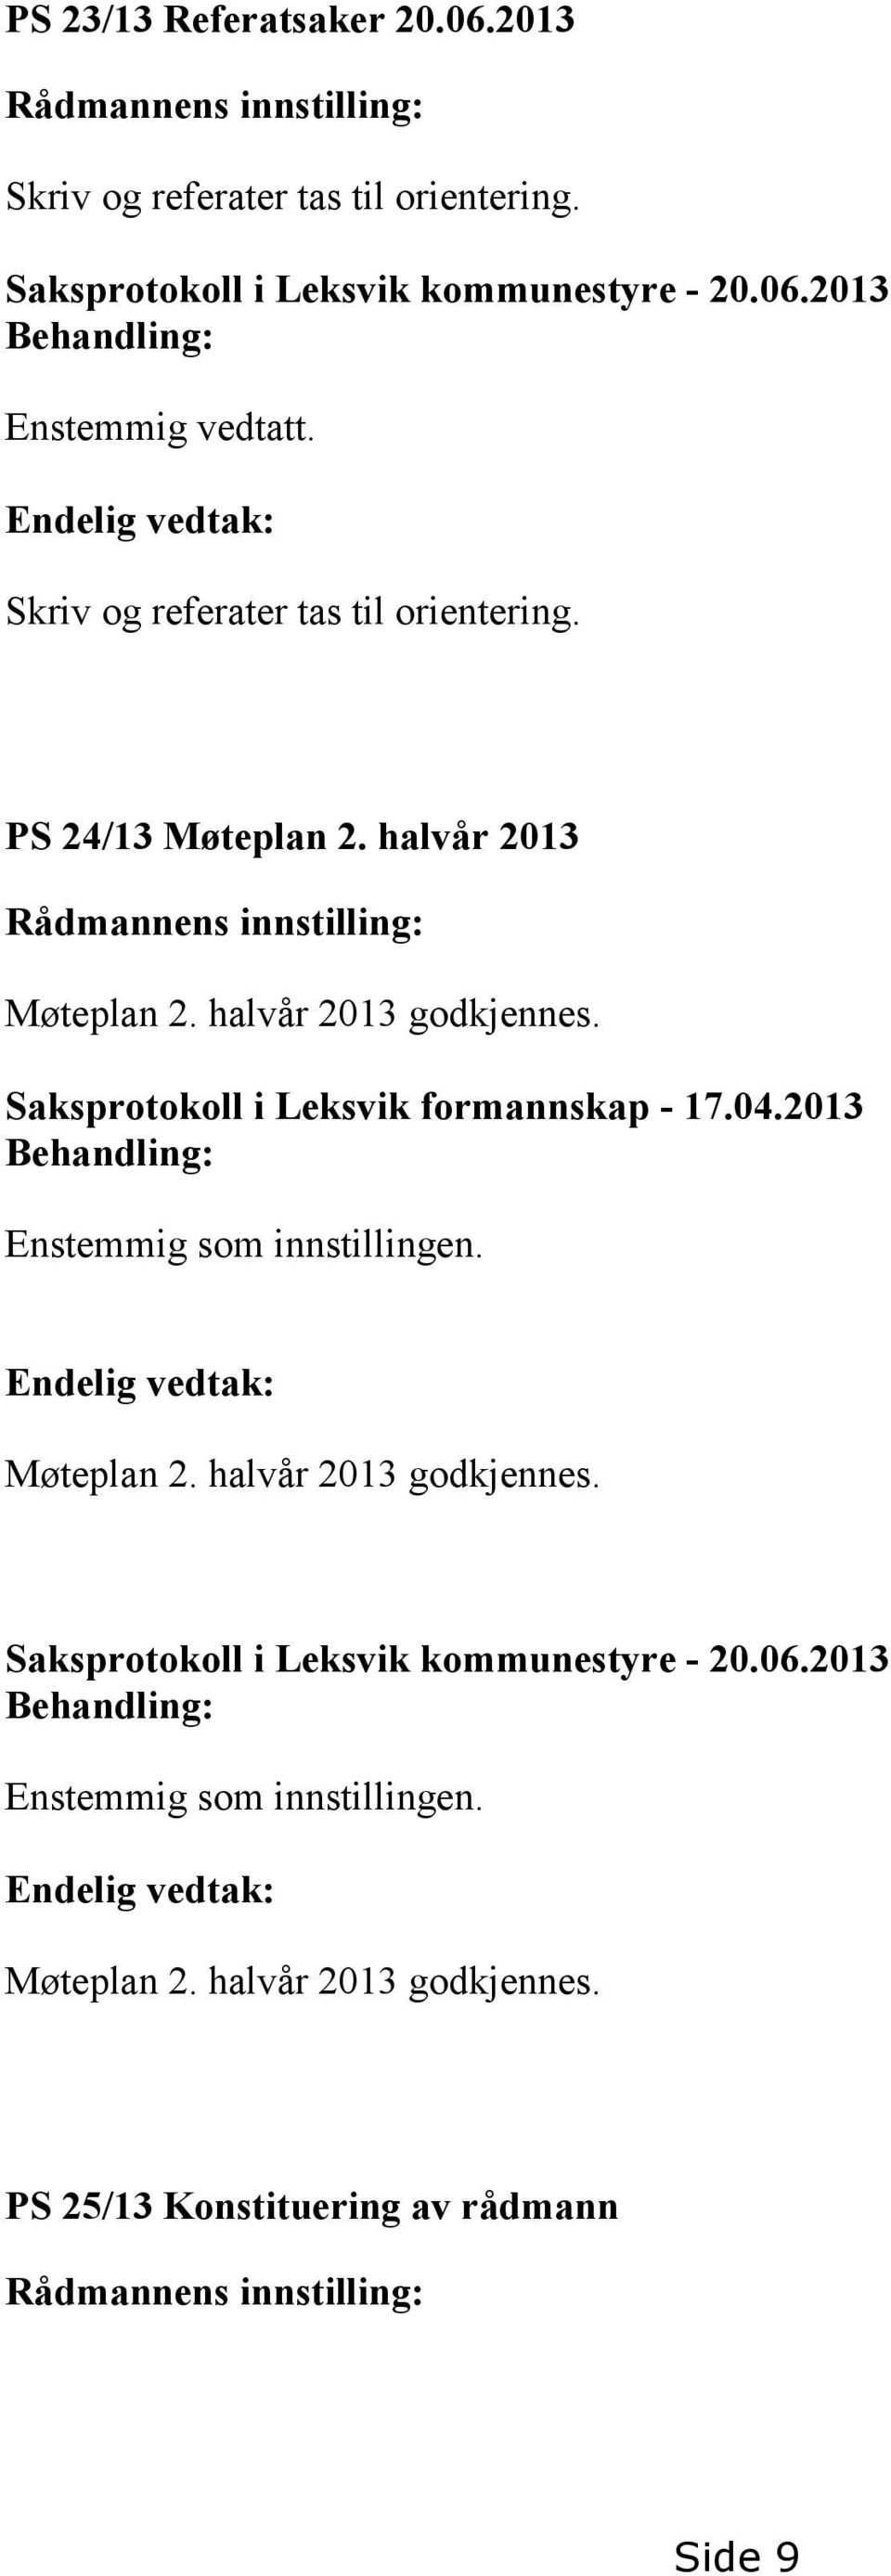 Saksprotokoll i Leksvik formannskap - 17.04.2013 Enstemmig som innstillingen. Møteplan 2. halvår 2013 godkjennes.